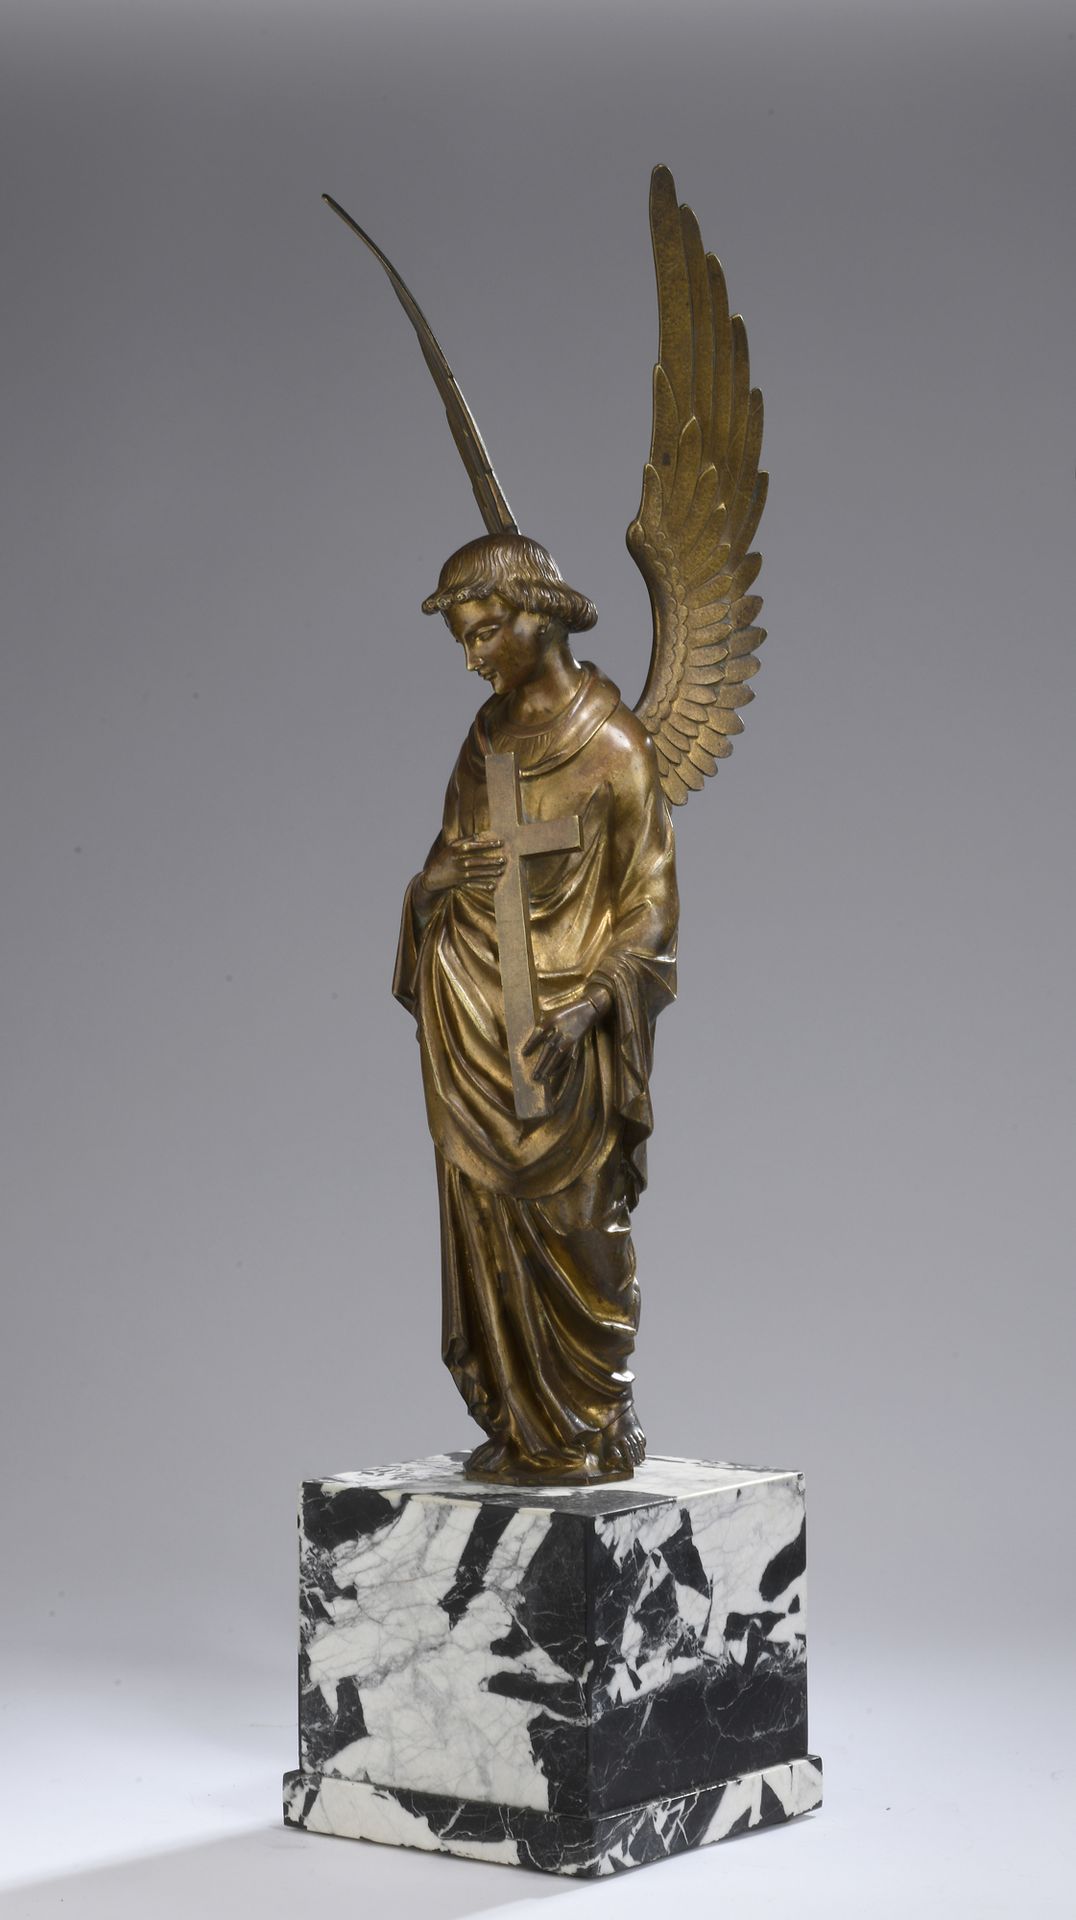 Null 19 世纪法国作品
十字架天使
带镀金铜锈的青铜打样，后镶嵌在黑白纹理大理石底座上。
H.55 厘米（不含底座 
H.69.5 厘米（带底座